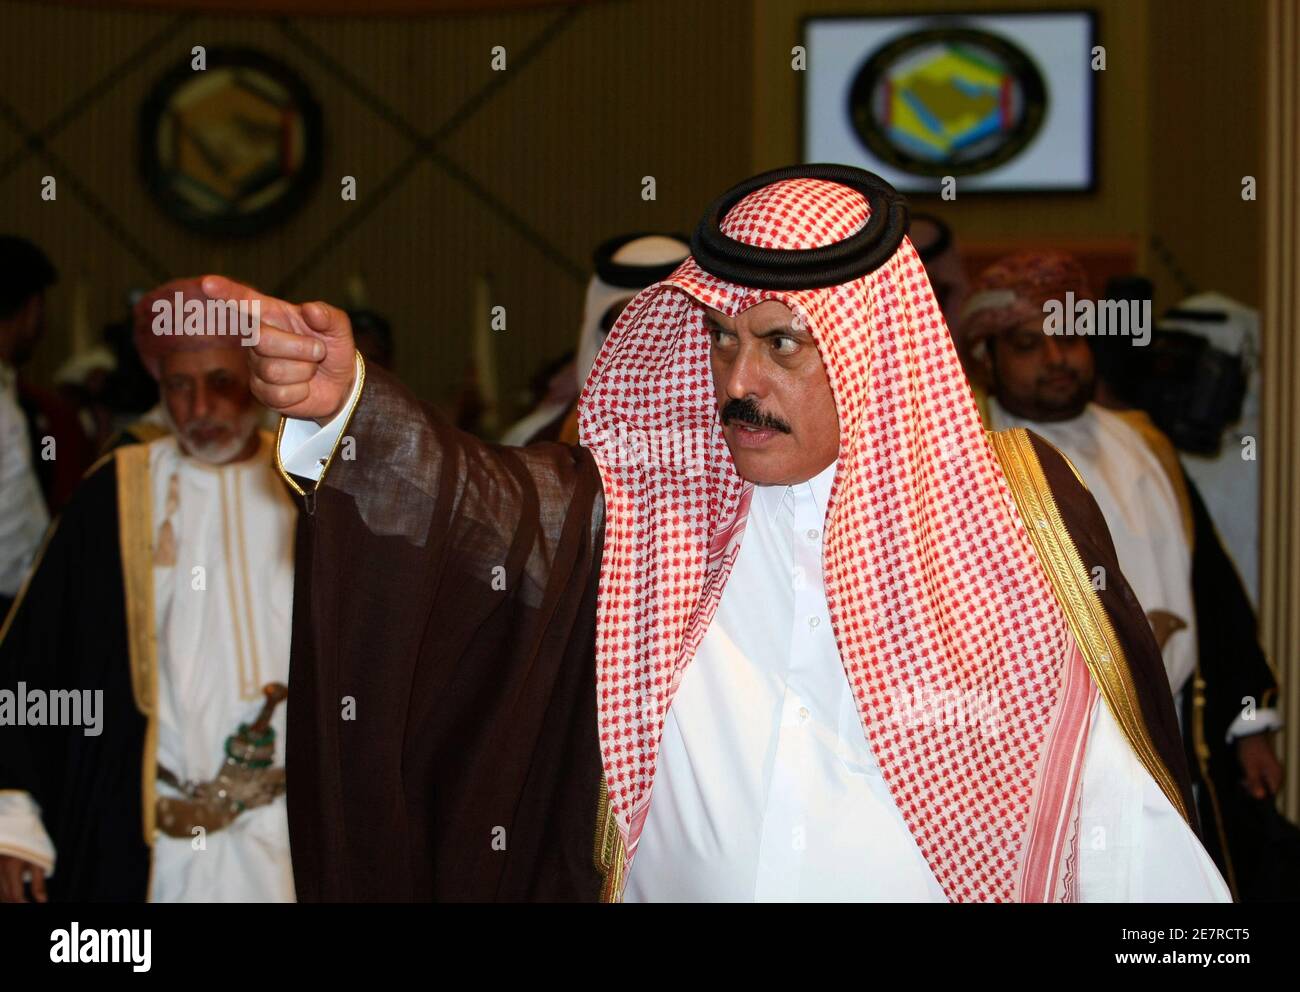 Generalsekretär der Gulf Cooperation Council (GCC) Abdul-Rahman al-Attiyah Gesten während die GCC-Außenminister treffen sich in Riad 22. Februar 2009. REUTERS/Fahad Shadeed (SAUDI Arabien) Stockfoto